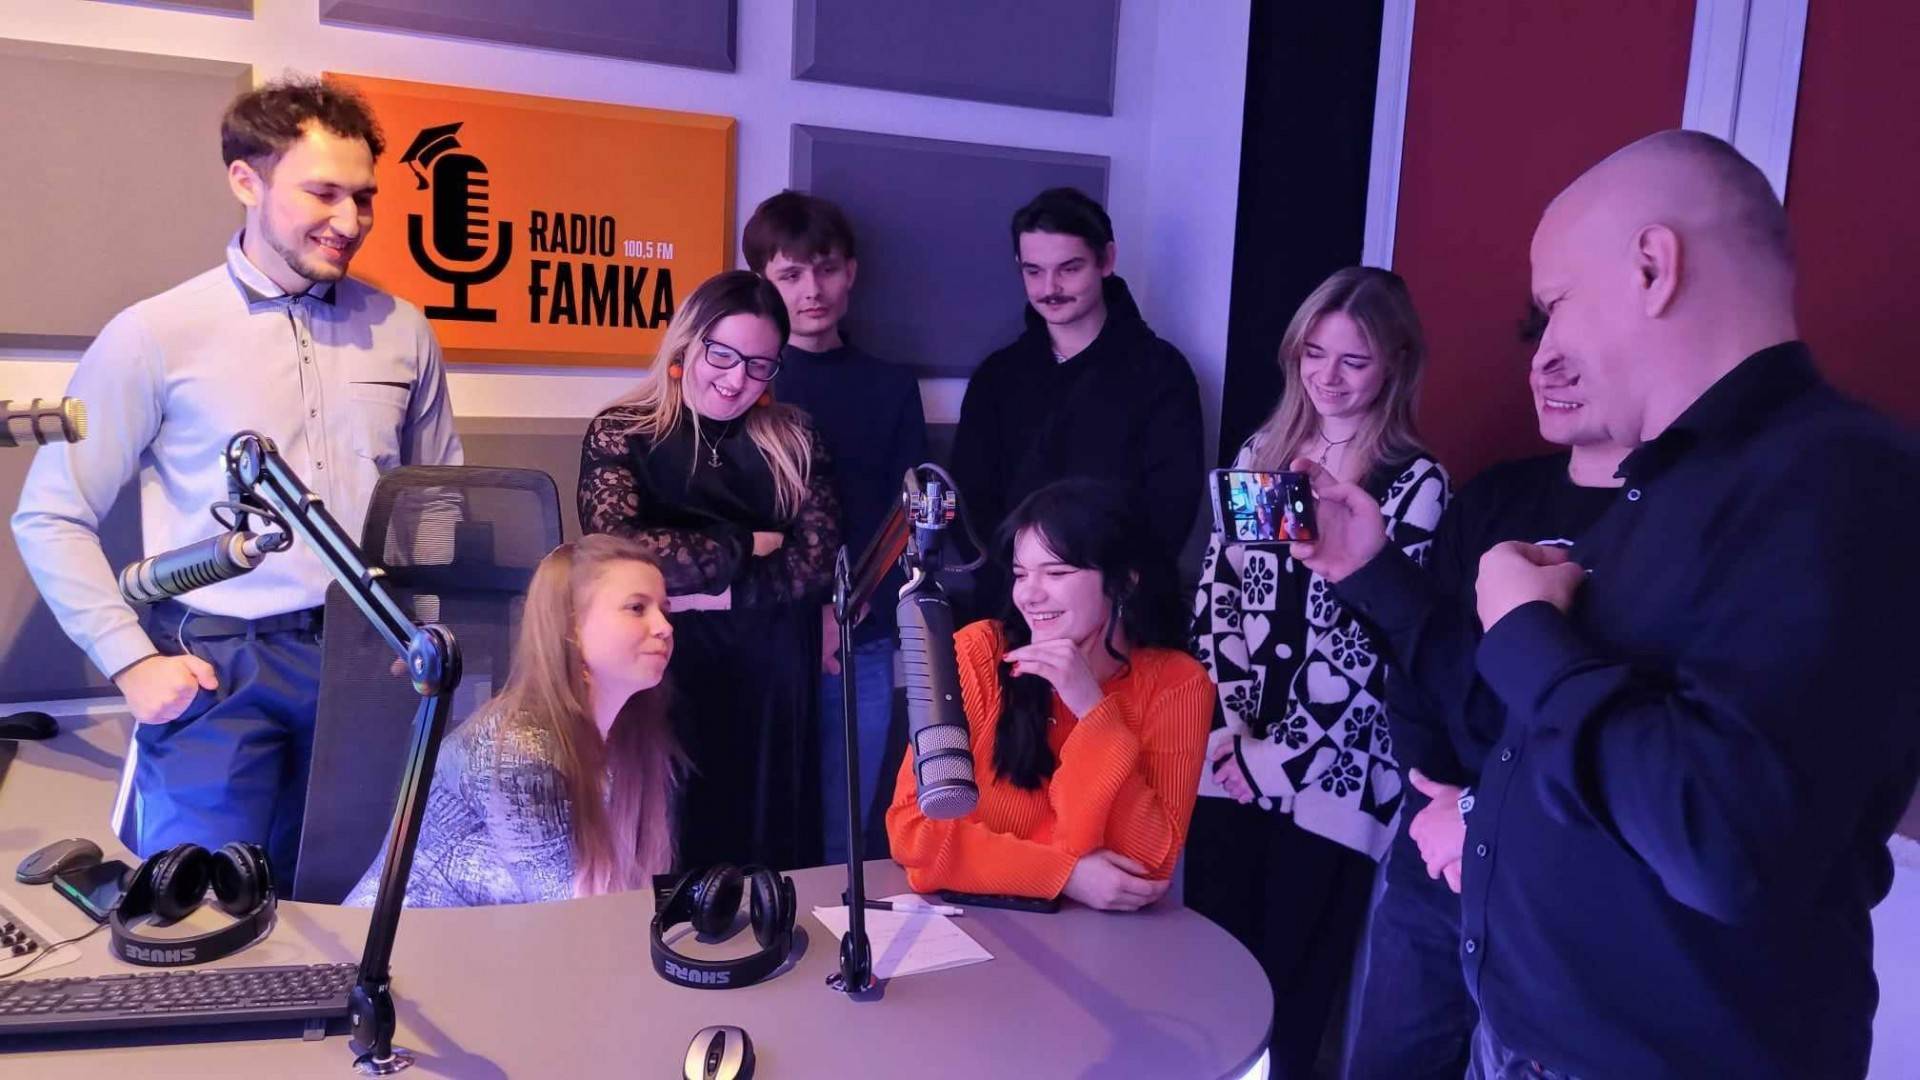 W Krakowie startuje nowe radio, w miejsce znanej i cenionej kiedyś stacji